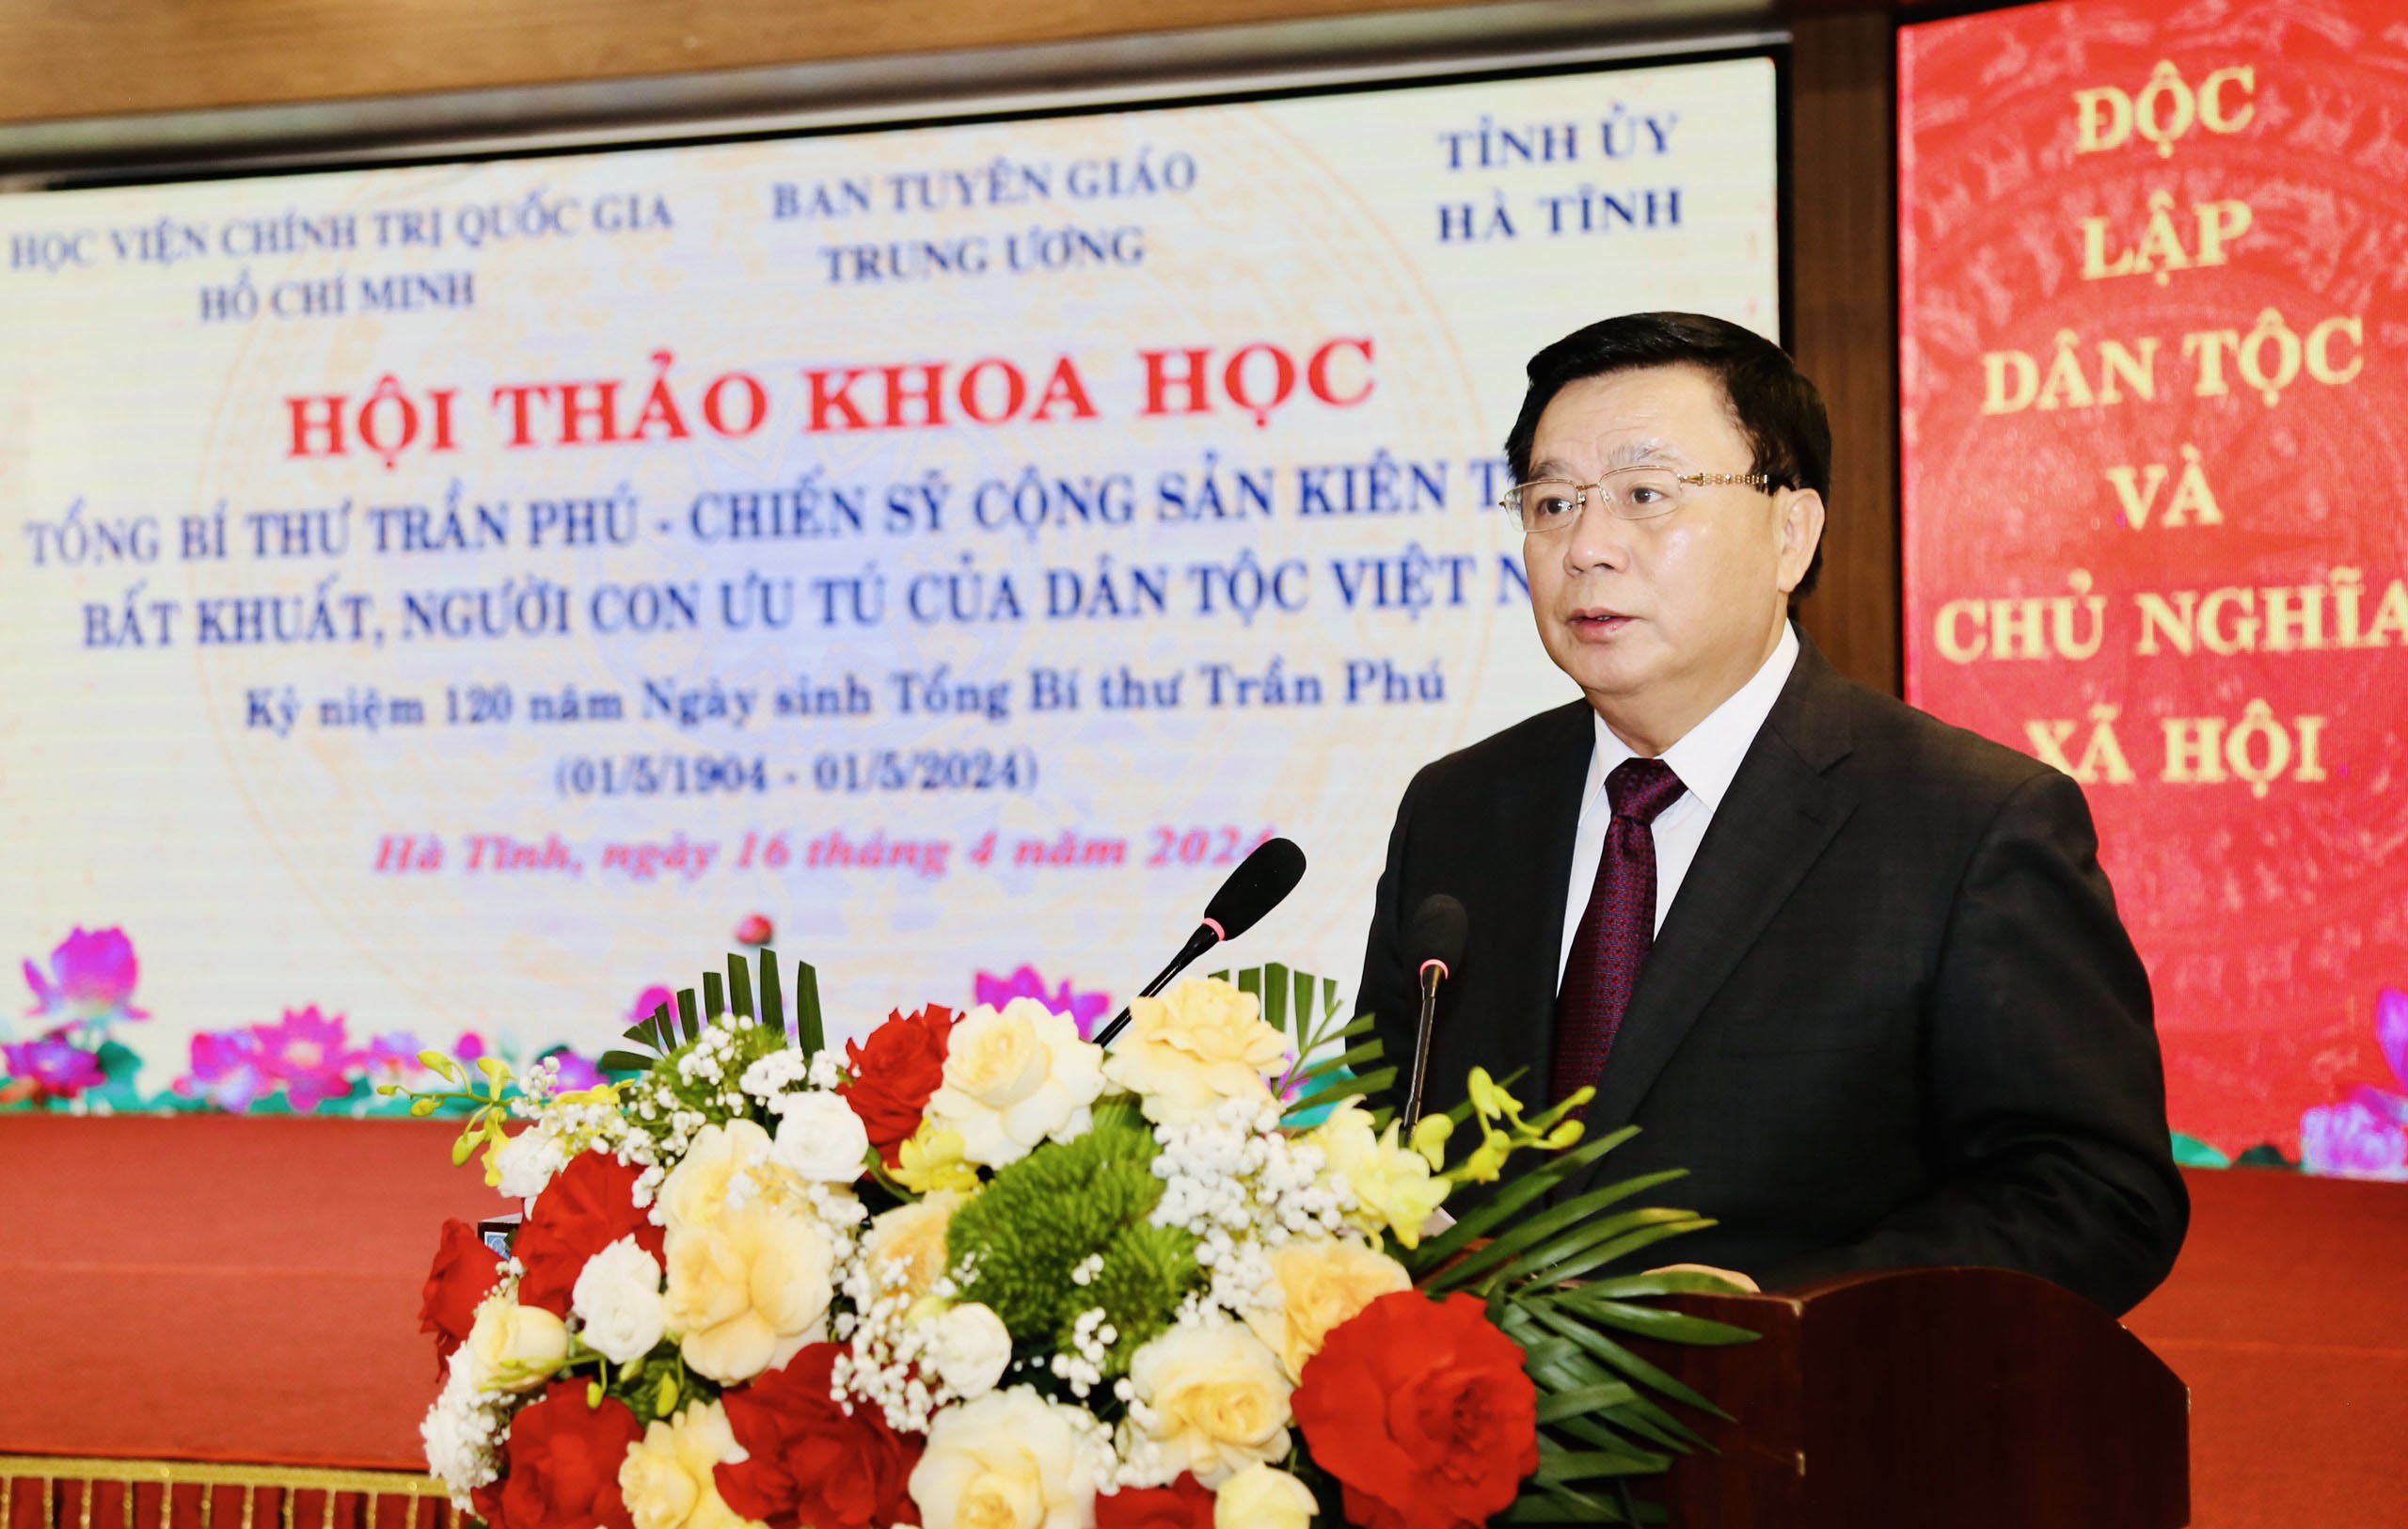 Tổng Bí thư Trần Phú - người chiến sĩ cộng sản kiên trung, bất khuất của dân tộc Việt Nam